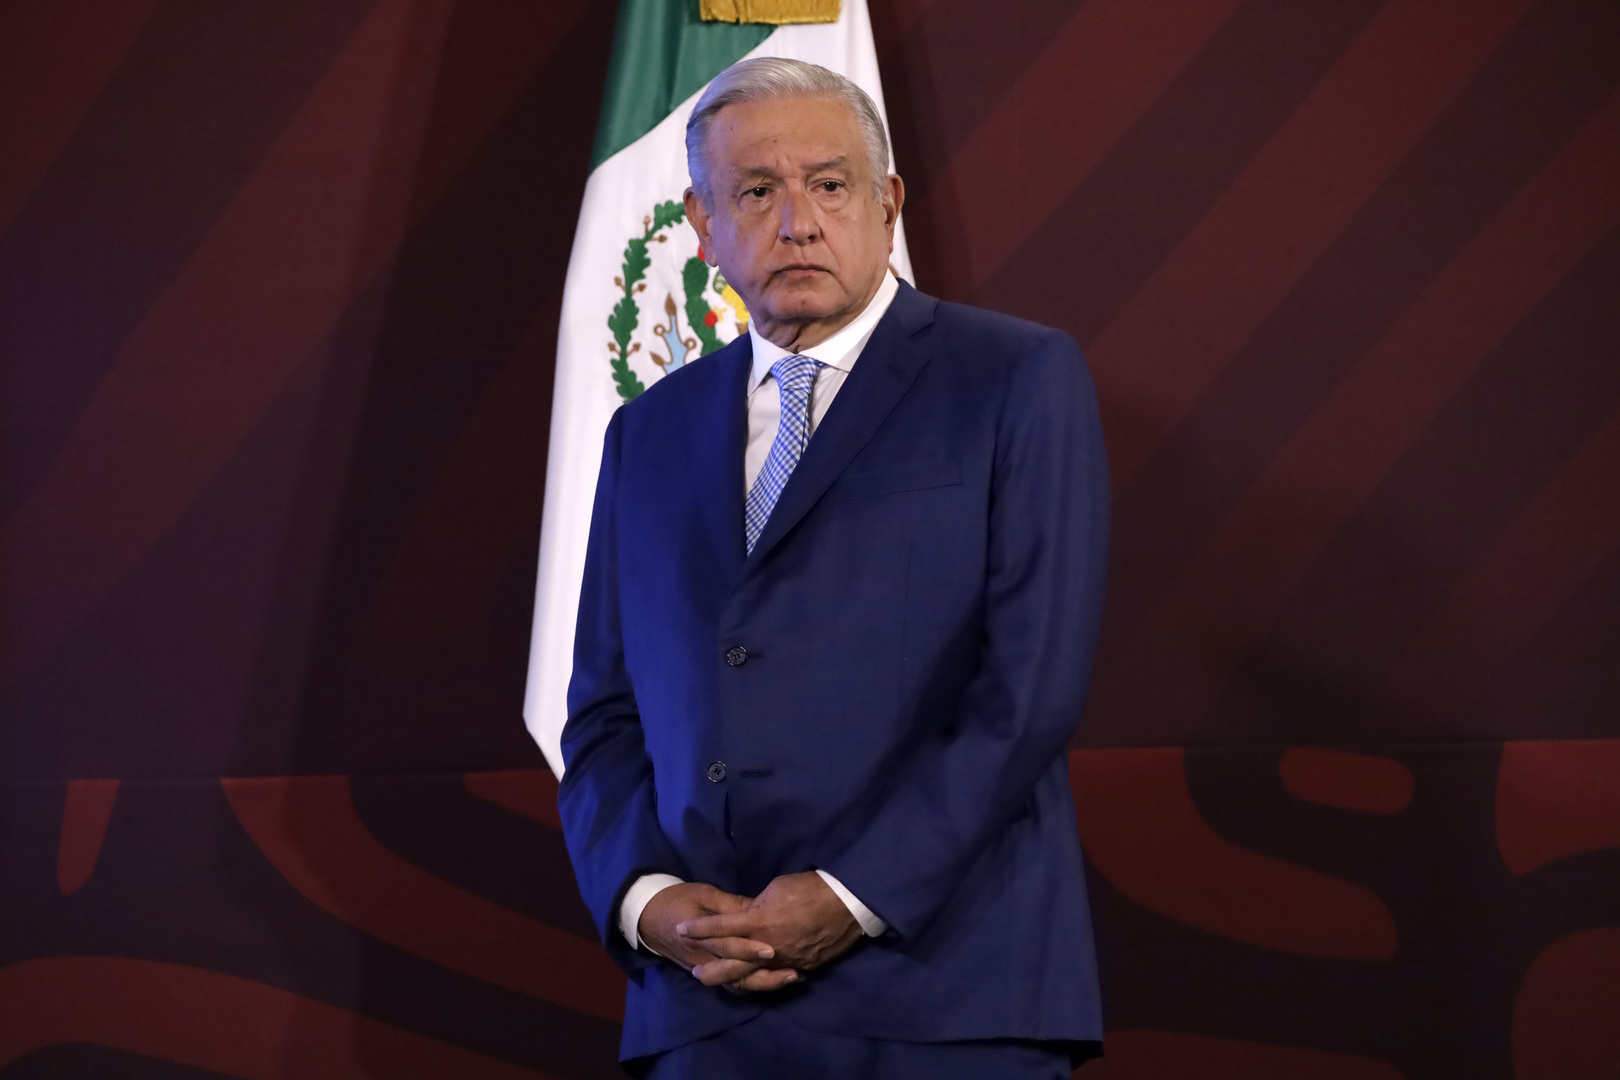 برلمان بيرو يعلن رئيس المكسيك شخصية غير مرغوب فيها